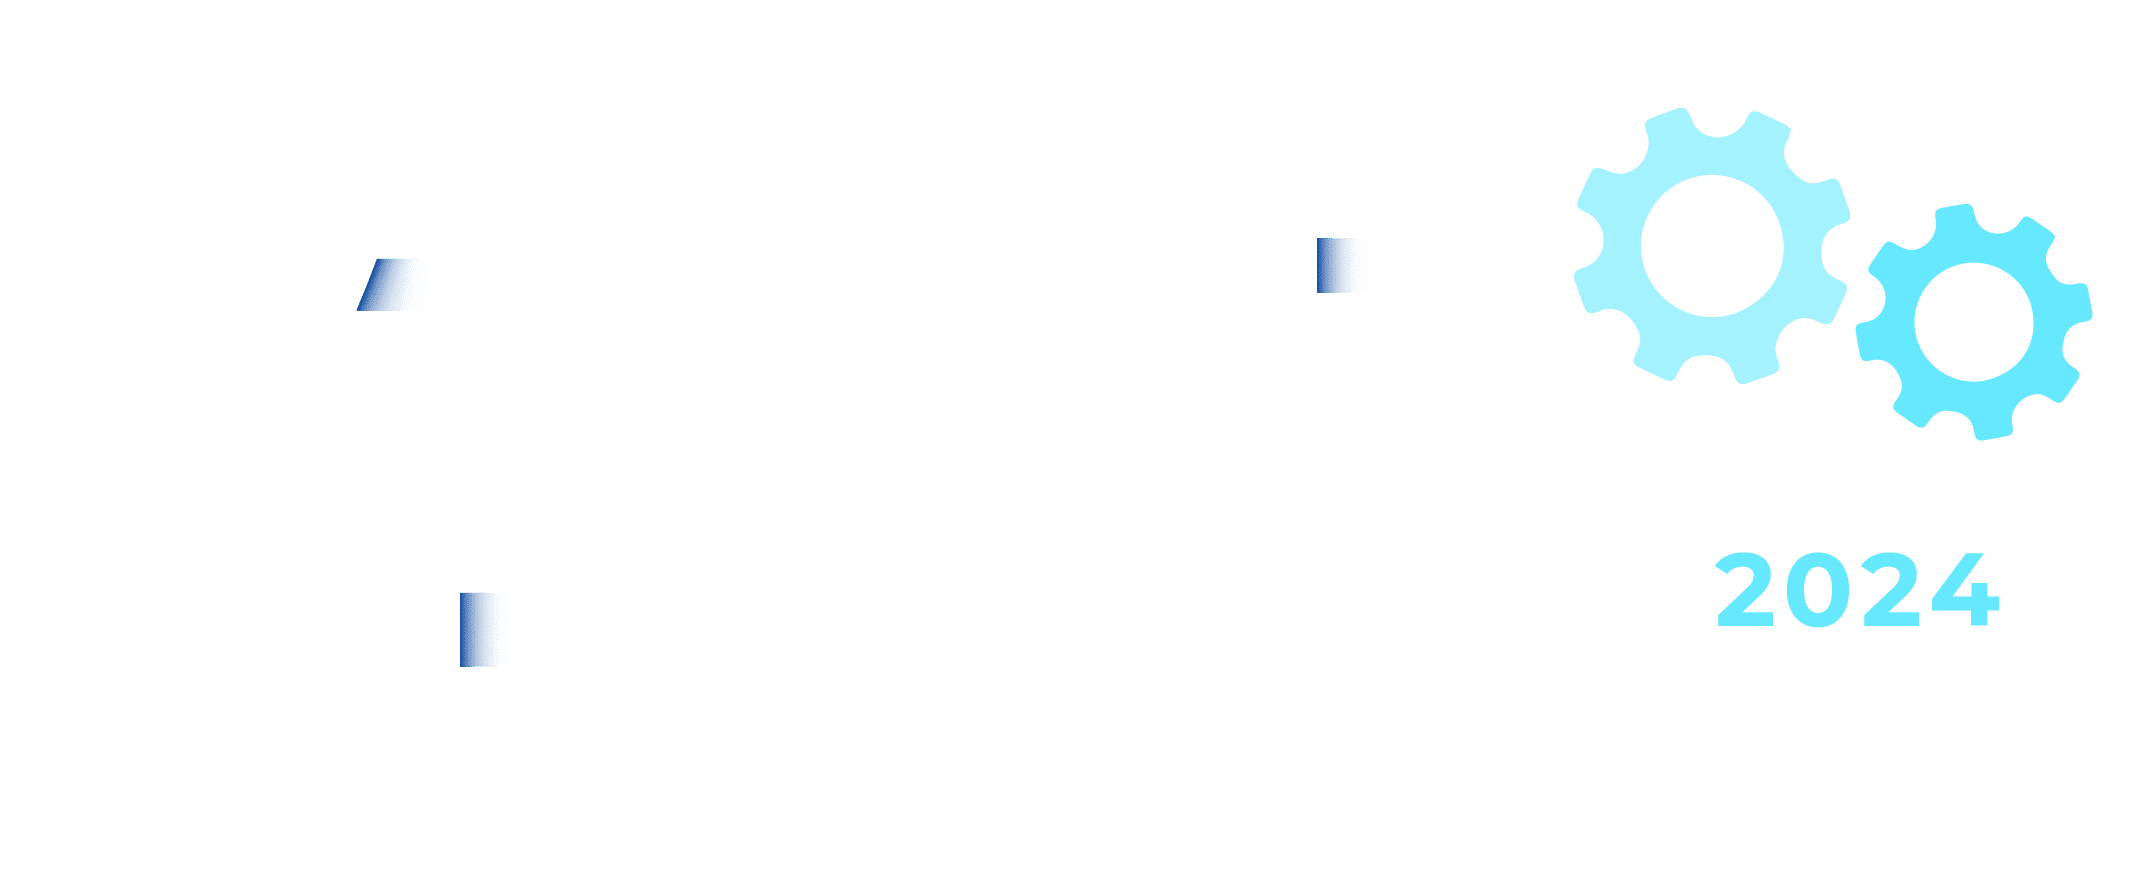 2024-TALLER-FRIKKO-LOGO24--03